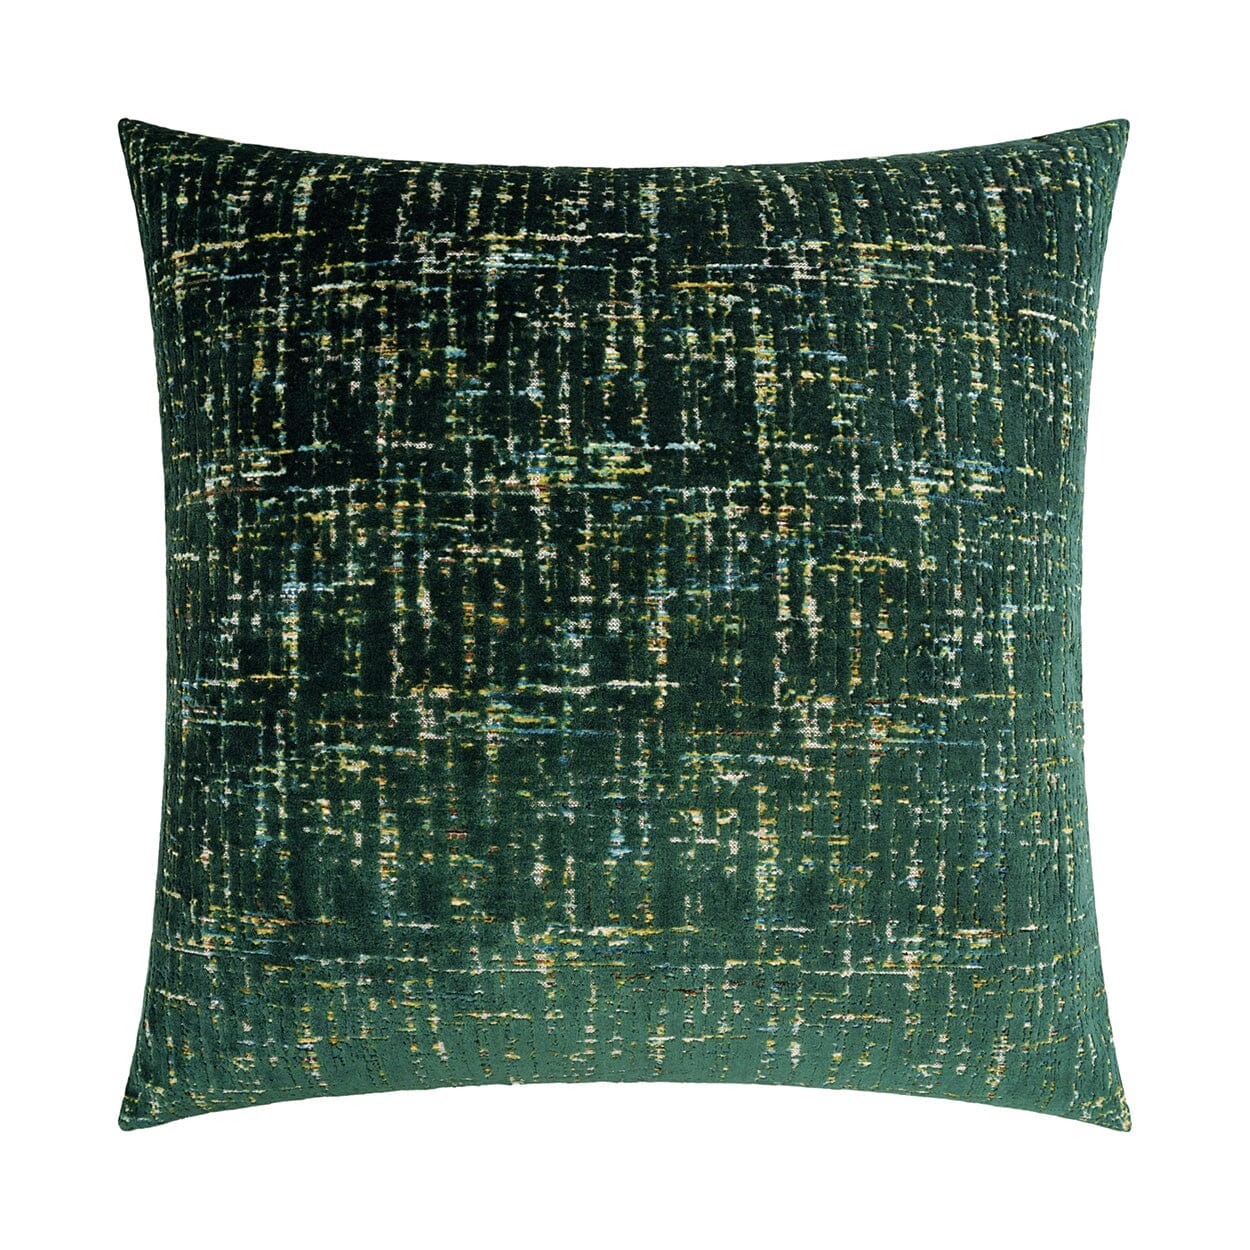 D.V. Kap 24" x 24" Decorative Throw Pillow | Moonstruck Pillows D.V Kap Home